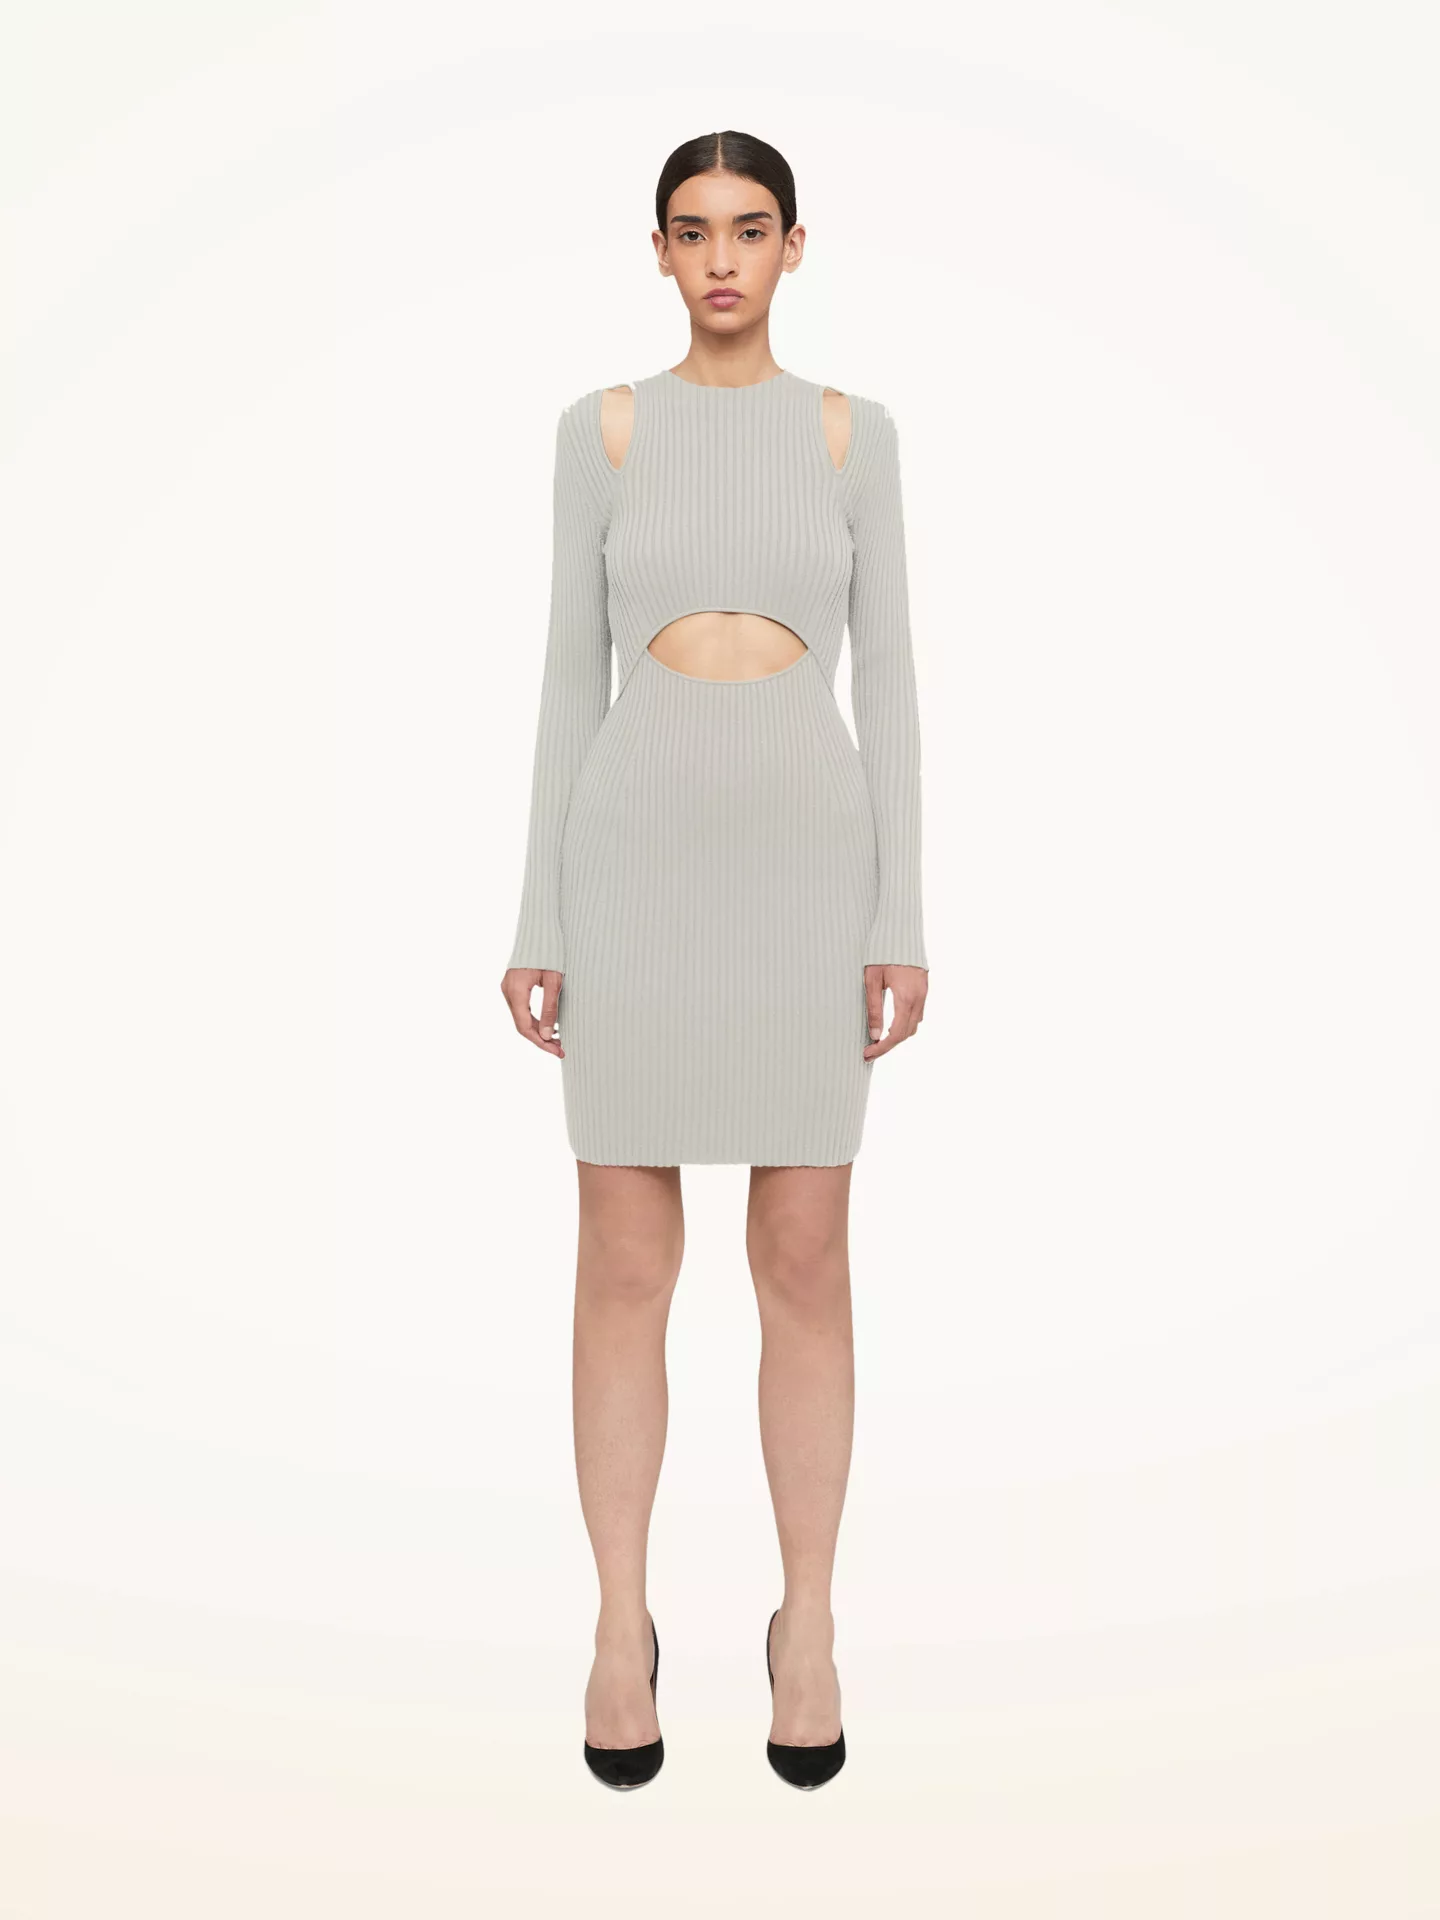 Wolford - Contoured Ribs Dress, Frau, ecrue, Größe: S günstig online kaufen